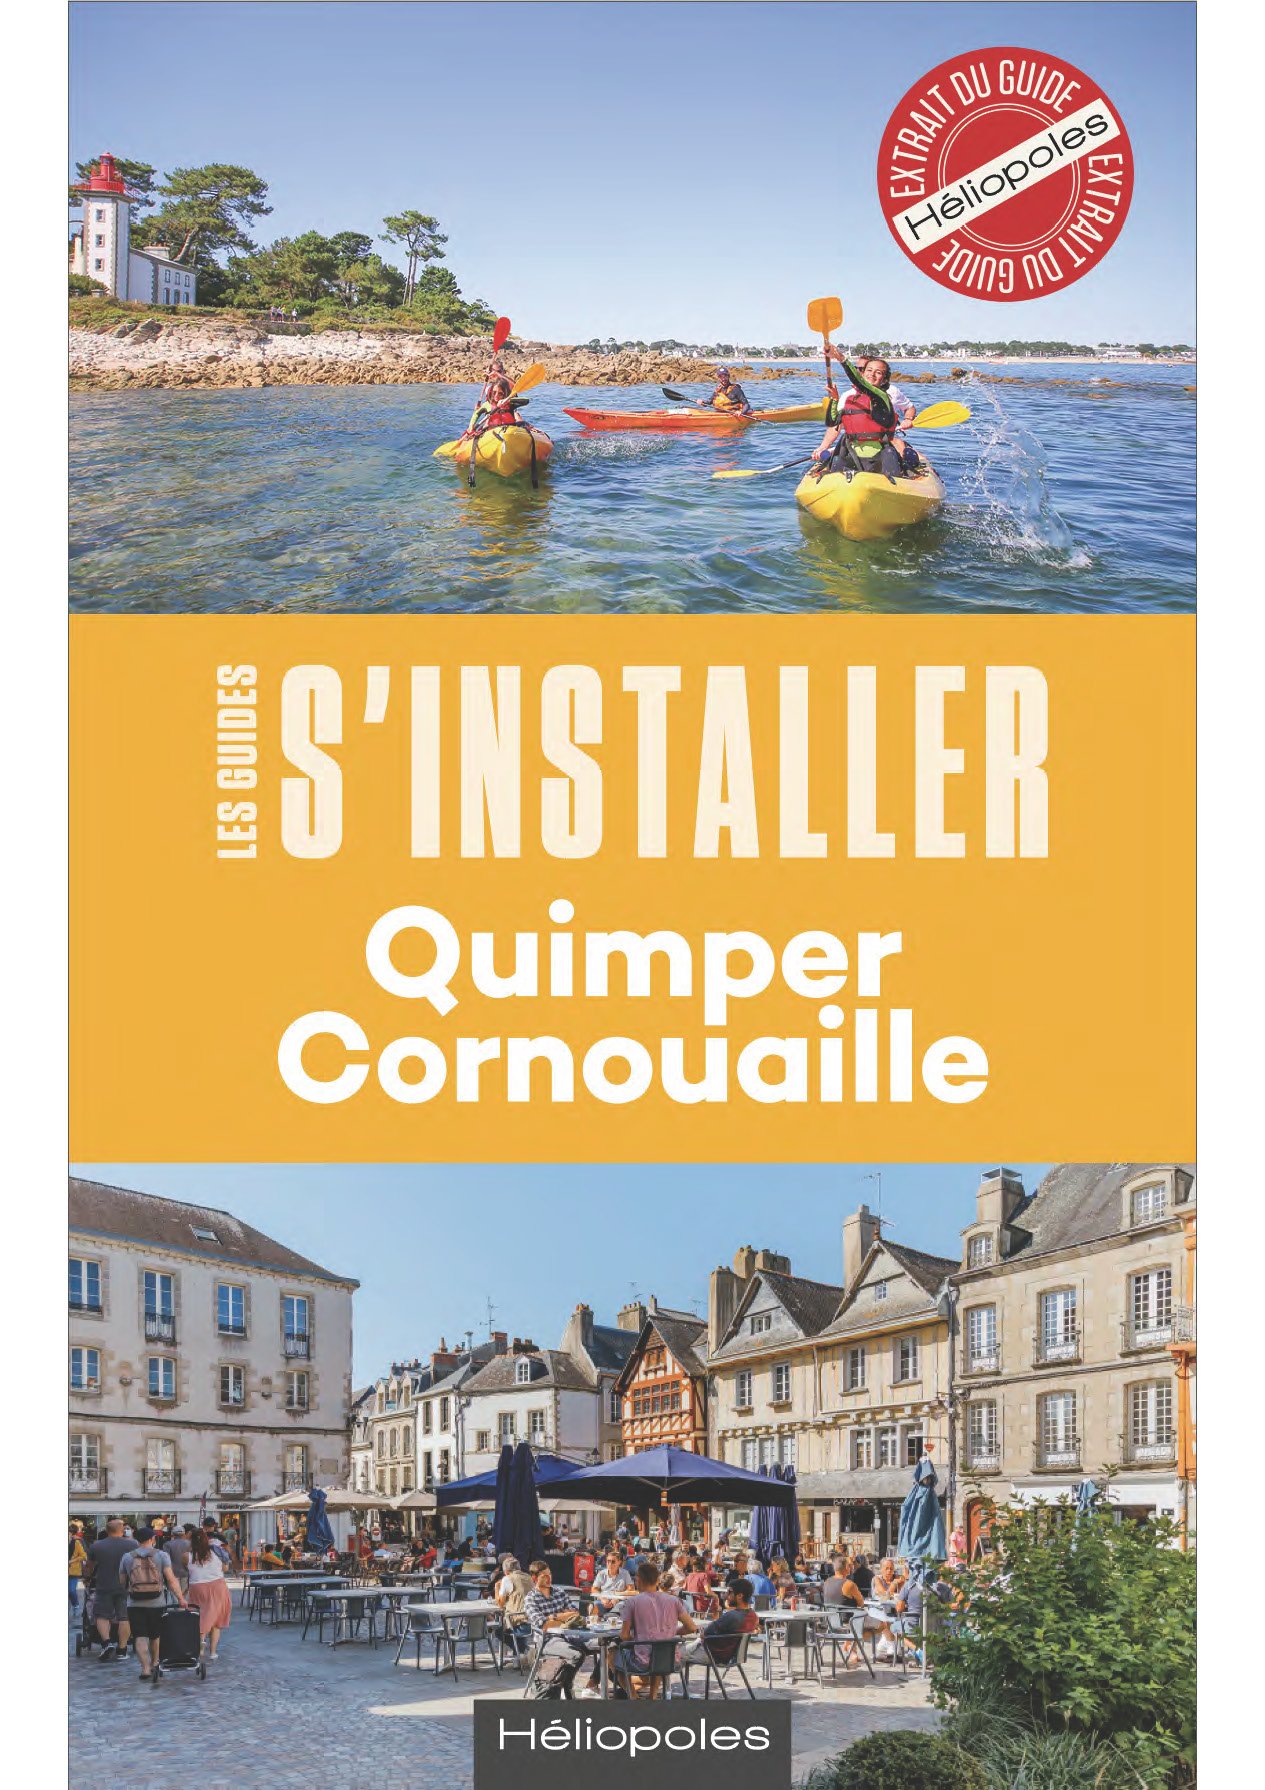 Page de couverture de l'extrait du guide S'installer à Quimper Cornouaille (Anne Gouérou & Erwan Seznec, éditions Héliopoles, mai 2022)